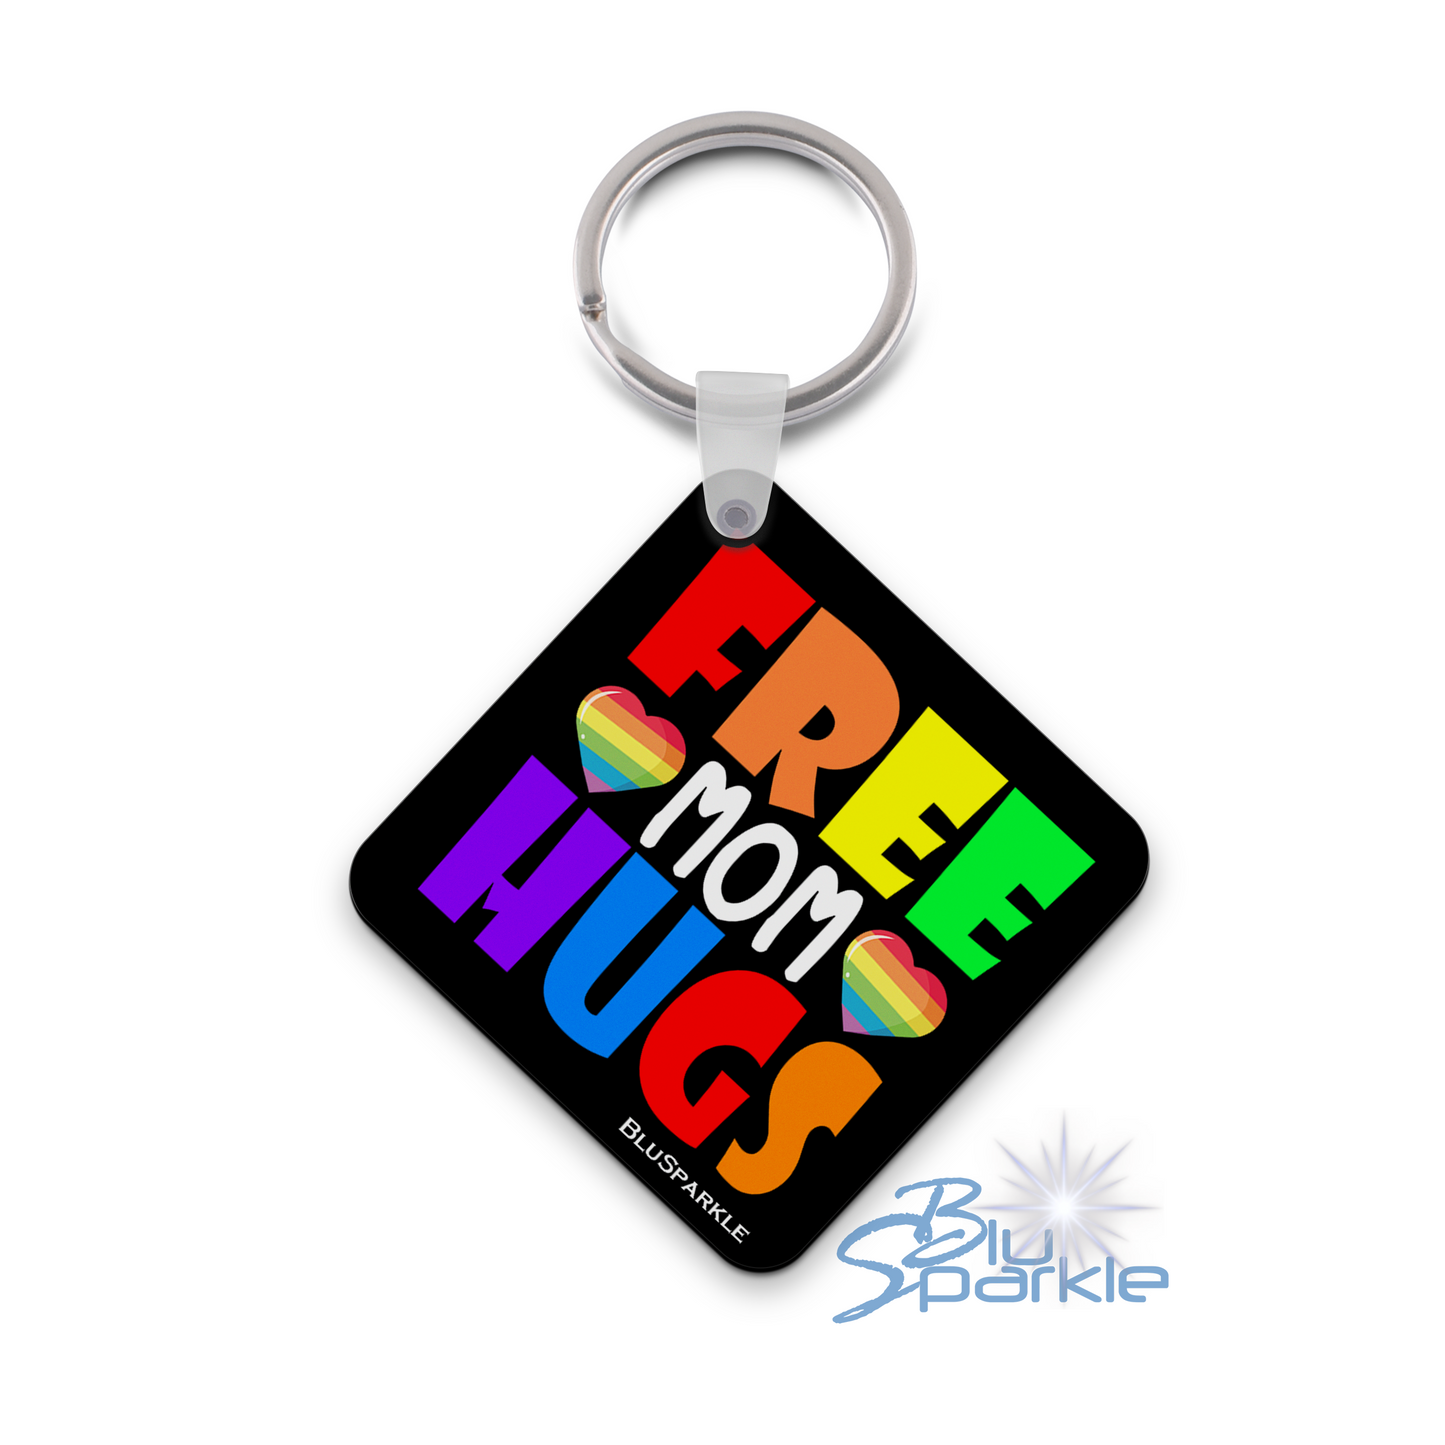 LGTBQ+ Free Hugs Key Chain